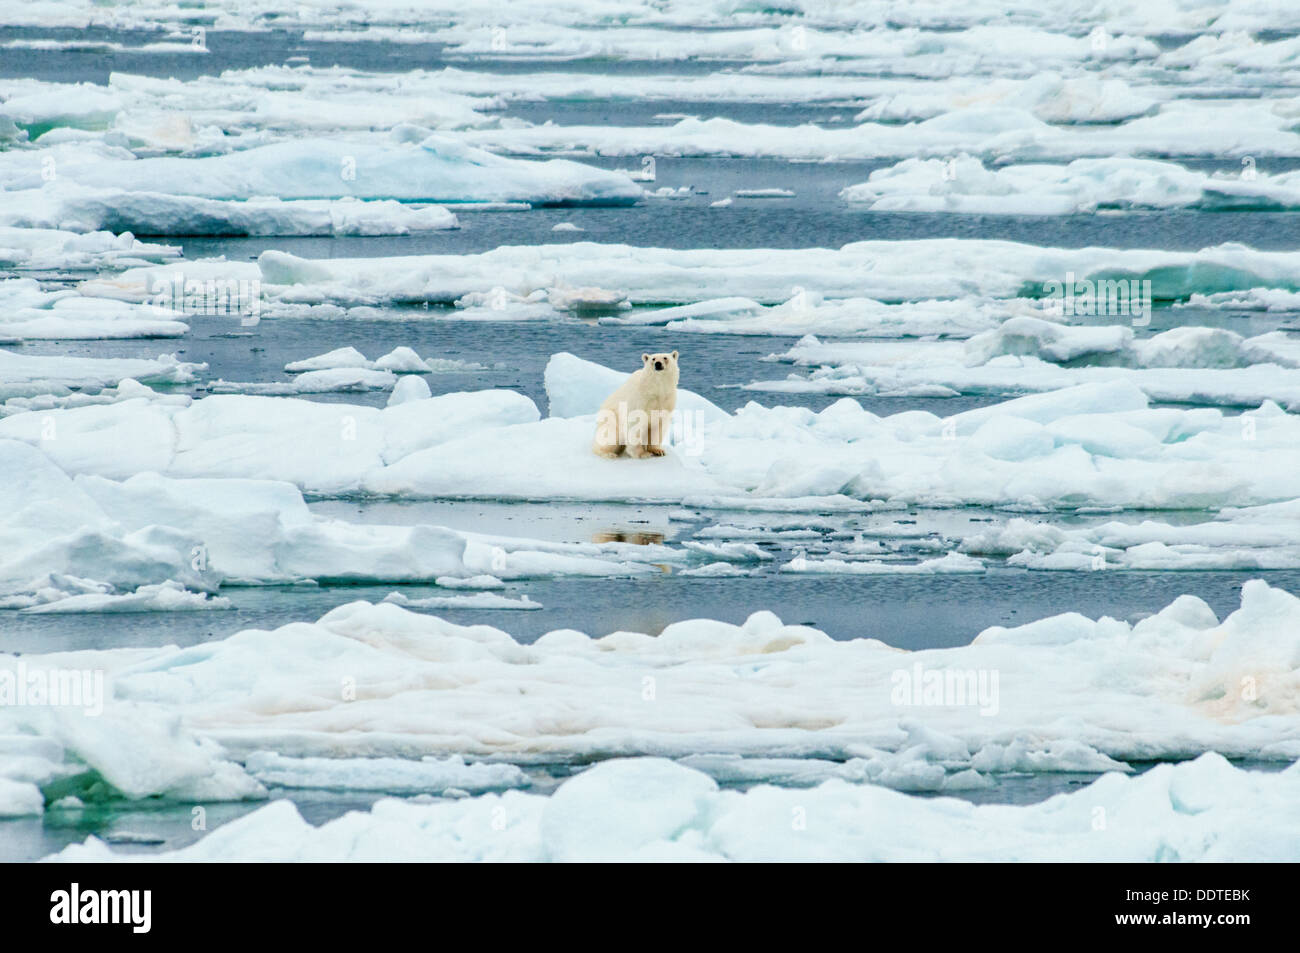 L'ours blanc, Ursus maritimus, assis sur de la glace fondante, Olgastretet la banquise, archipel du Svalbard, Norvège Banque D'Images